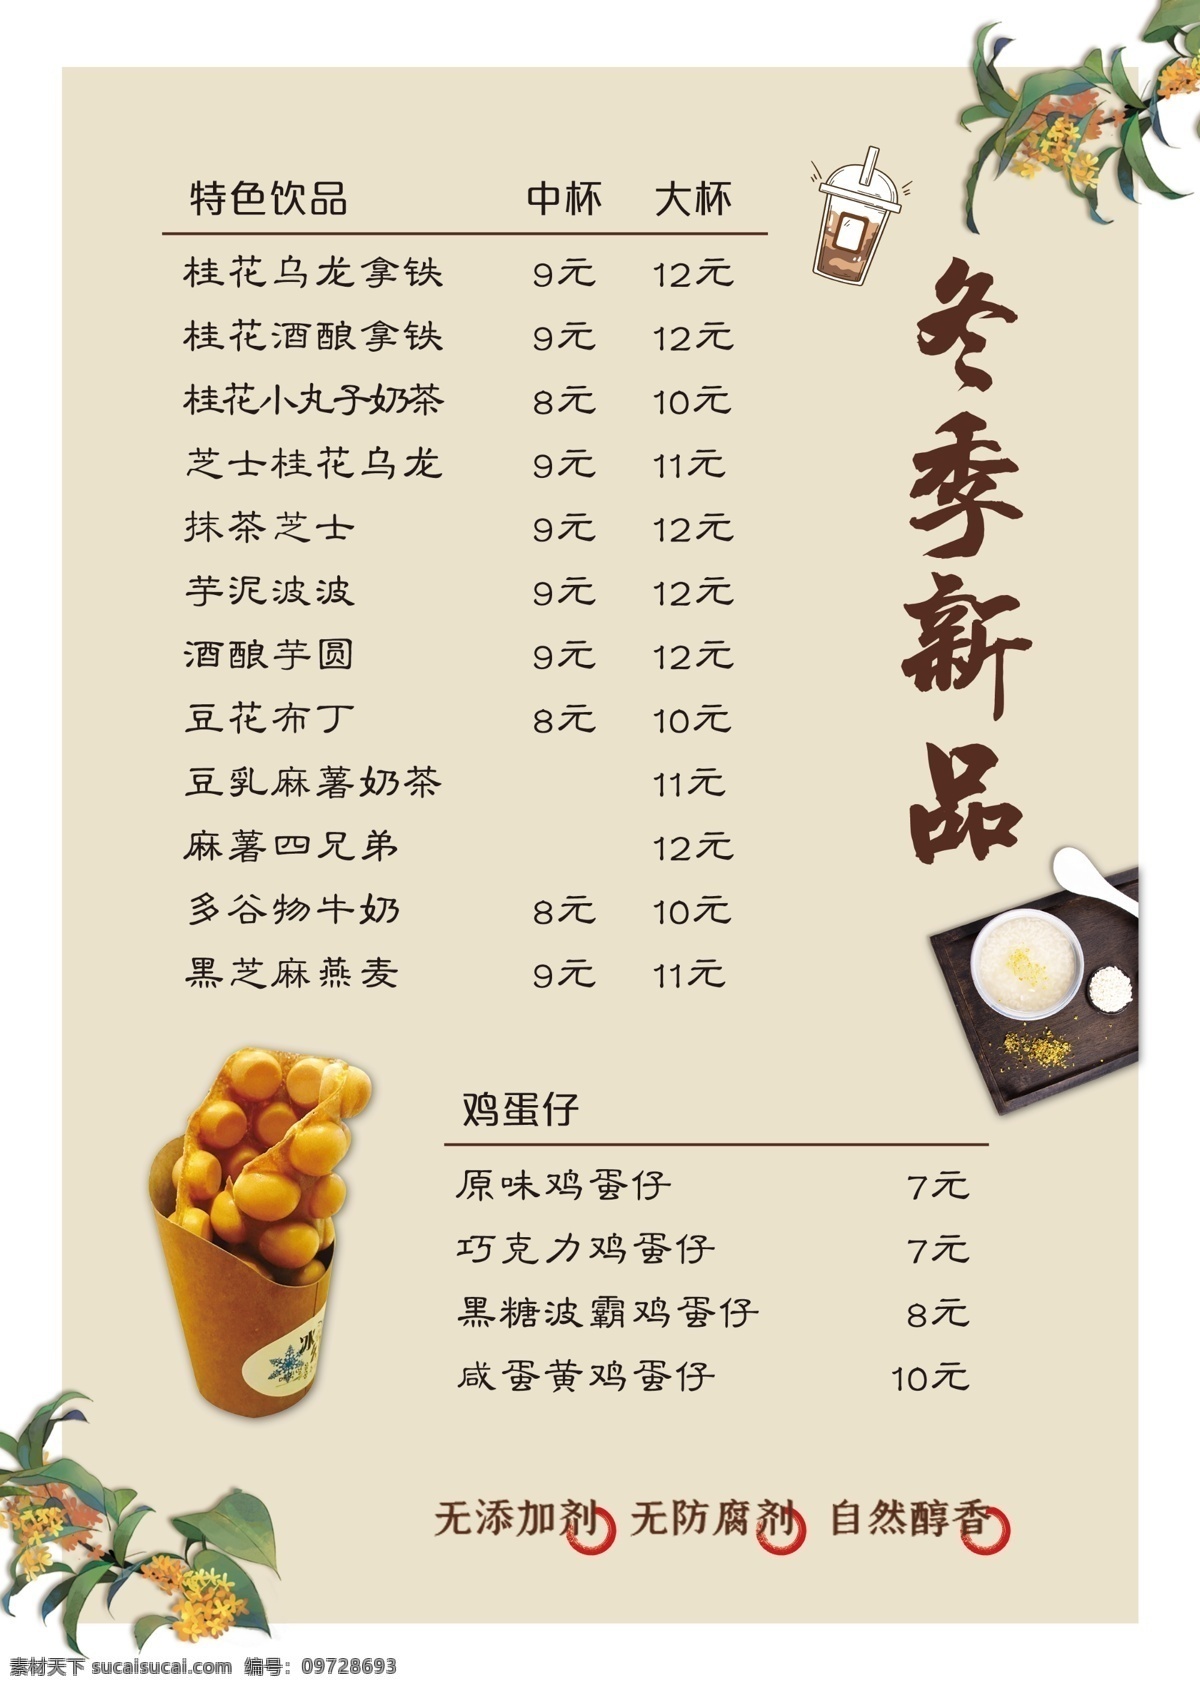 饮品菜单图片 奶茶 饮品 新品 推荐 菜单 价目表 分层